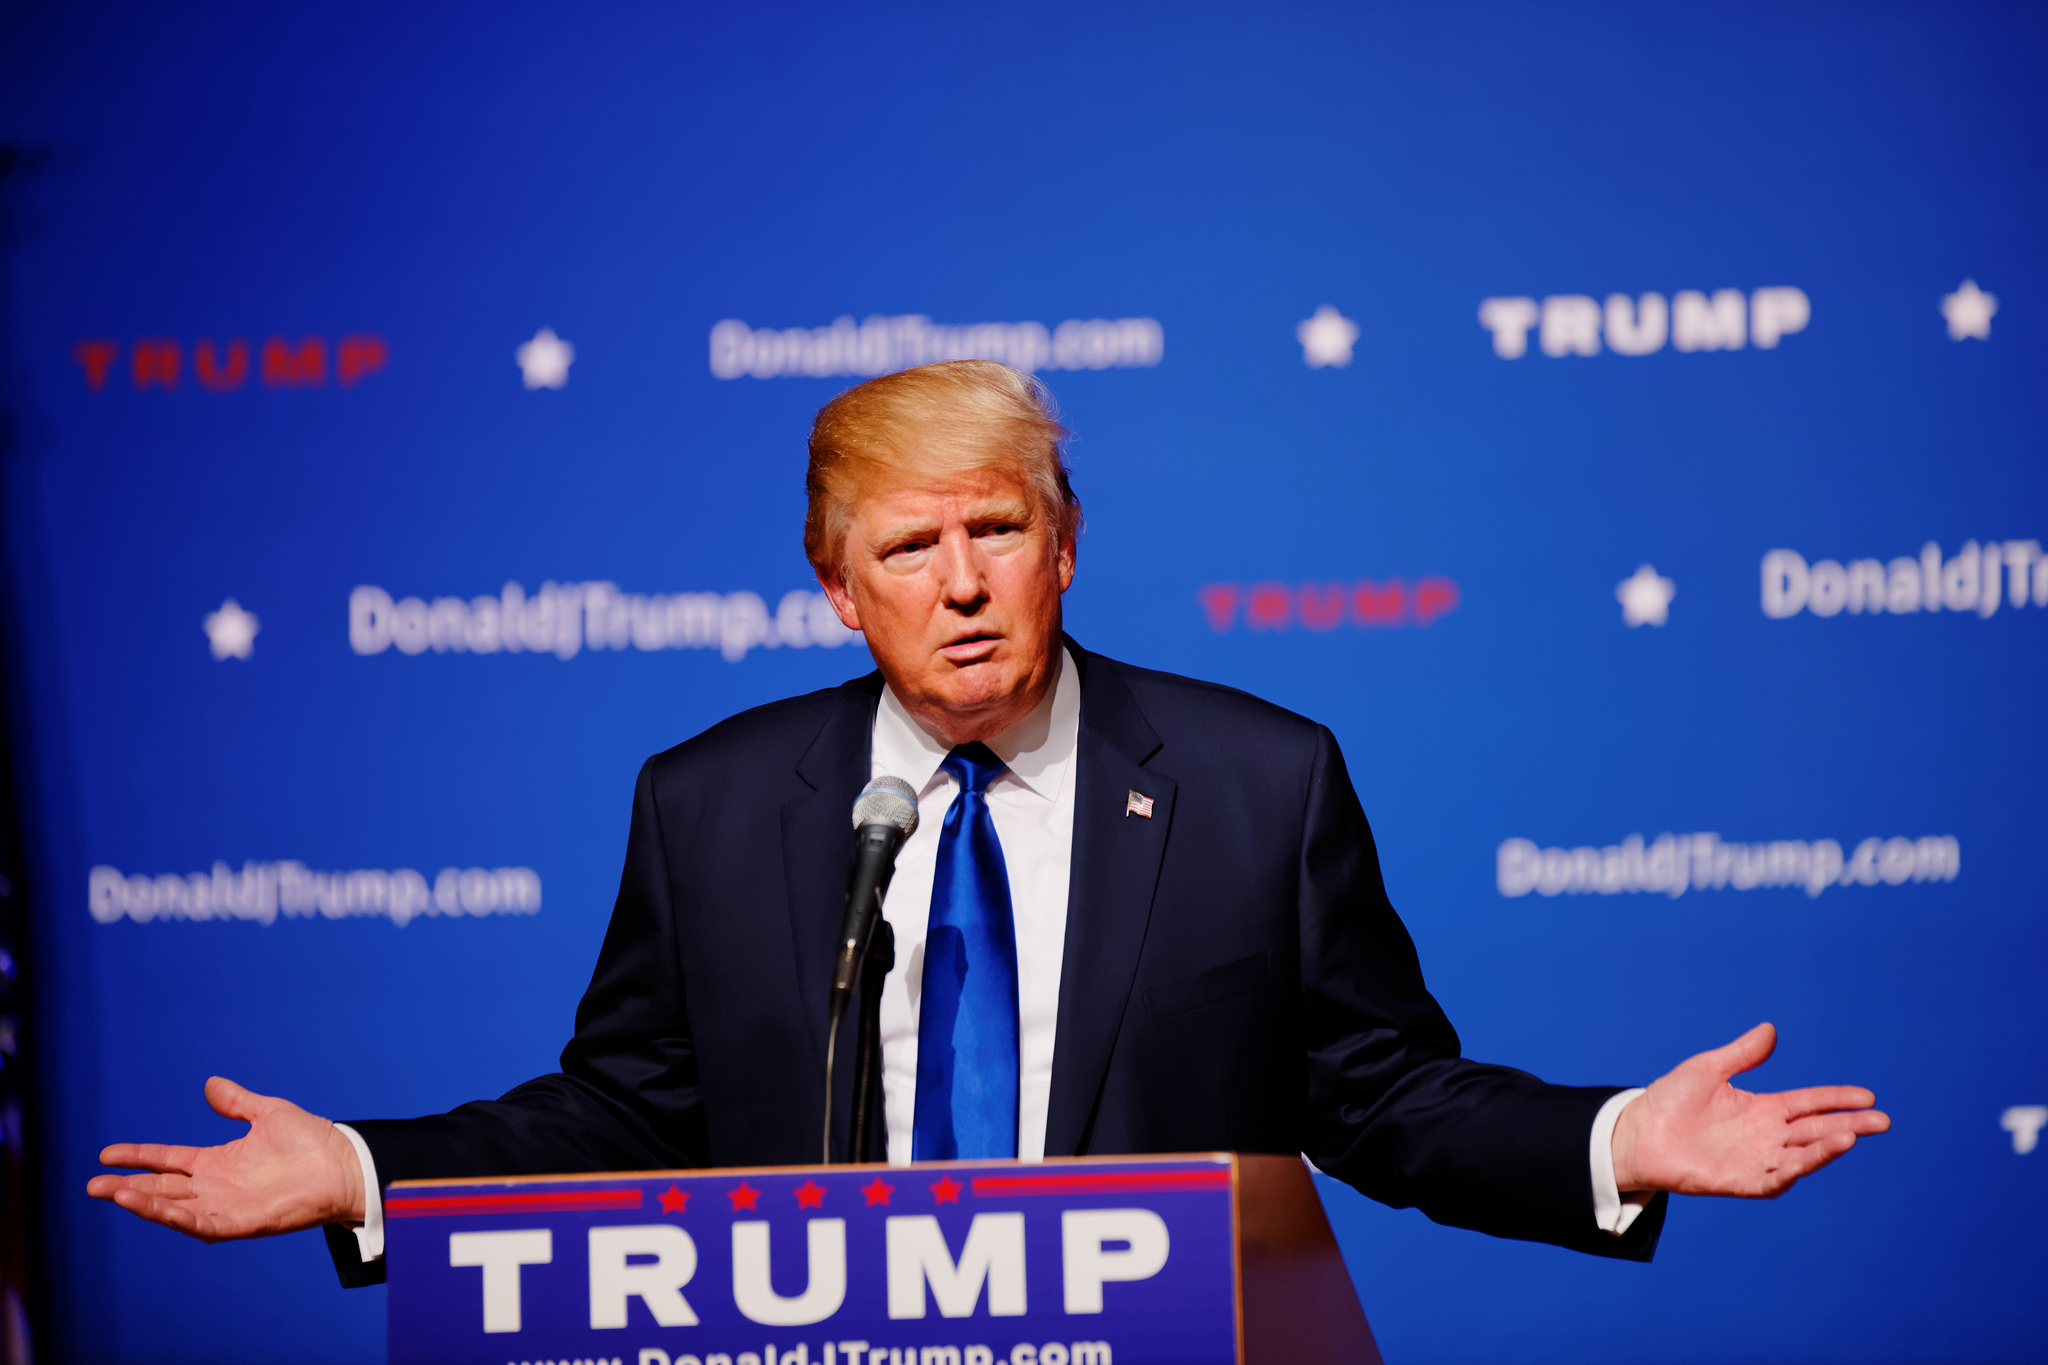 Trump herhaalde zijn verkiezingsretoriek ook na zijn aantreden. ‘America first’ zou betekenen dat het harde Amerikaanse eigenbelang boven alles zou gaan. Bron: Flickr / Michael Vadon